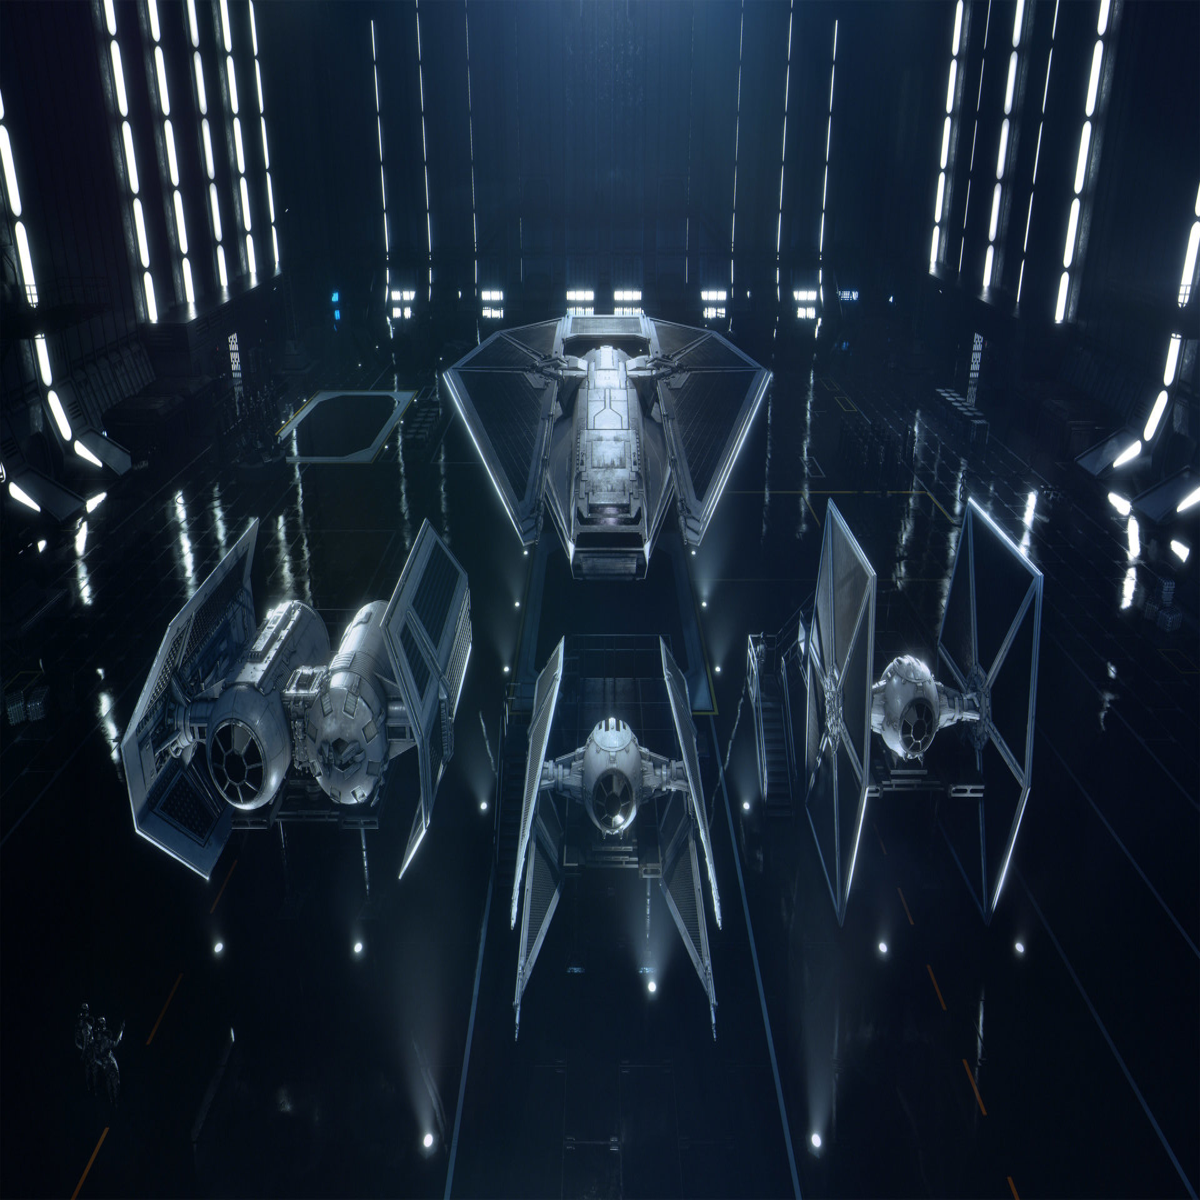 Stars Wars Squadrons chega em outubro com suporte para VR e crossplay